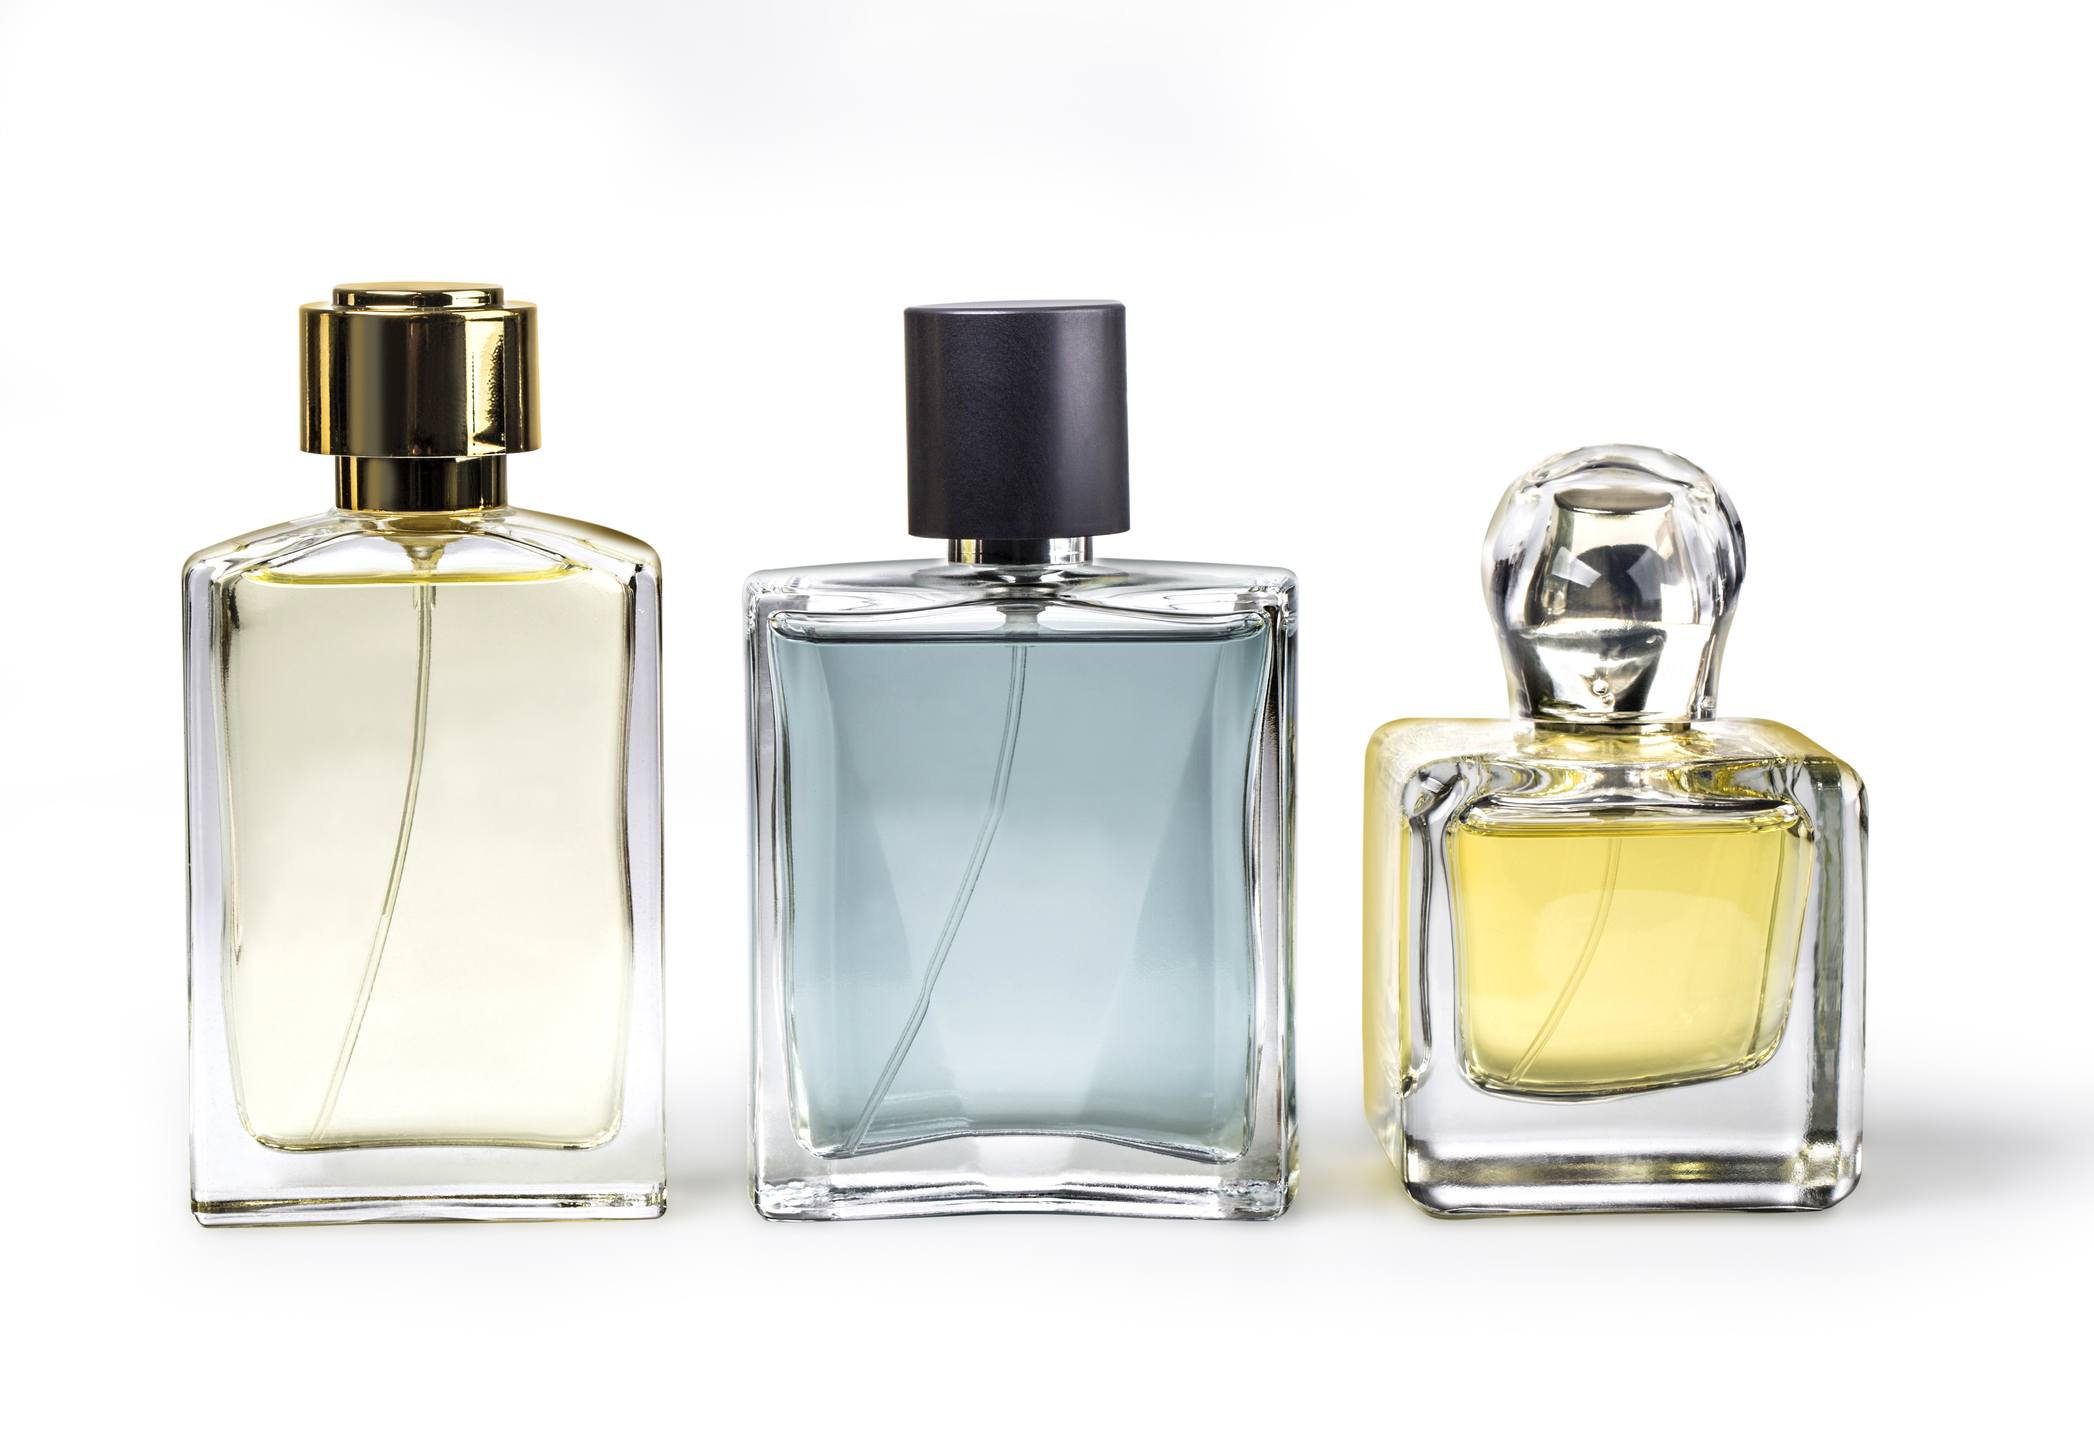 Studio photo of set of luxury perfume bottles